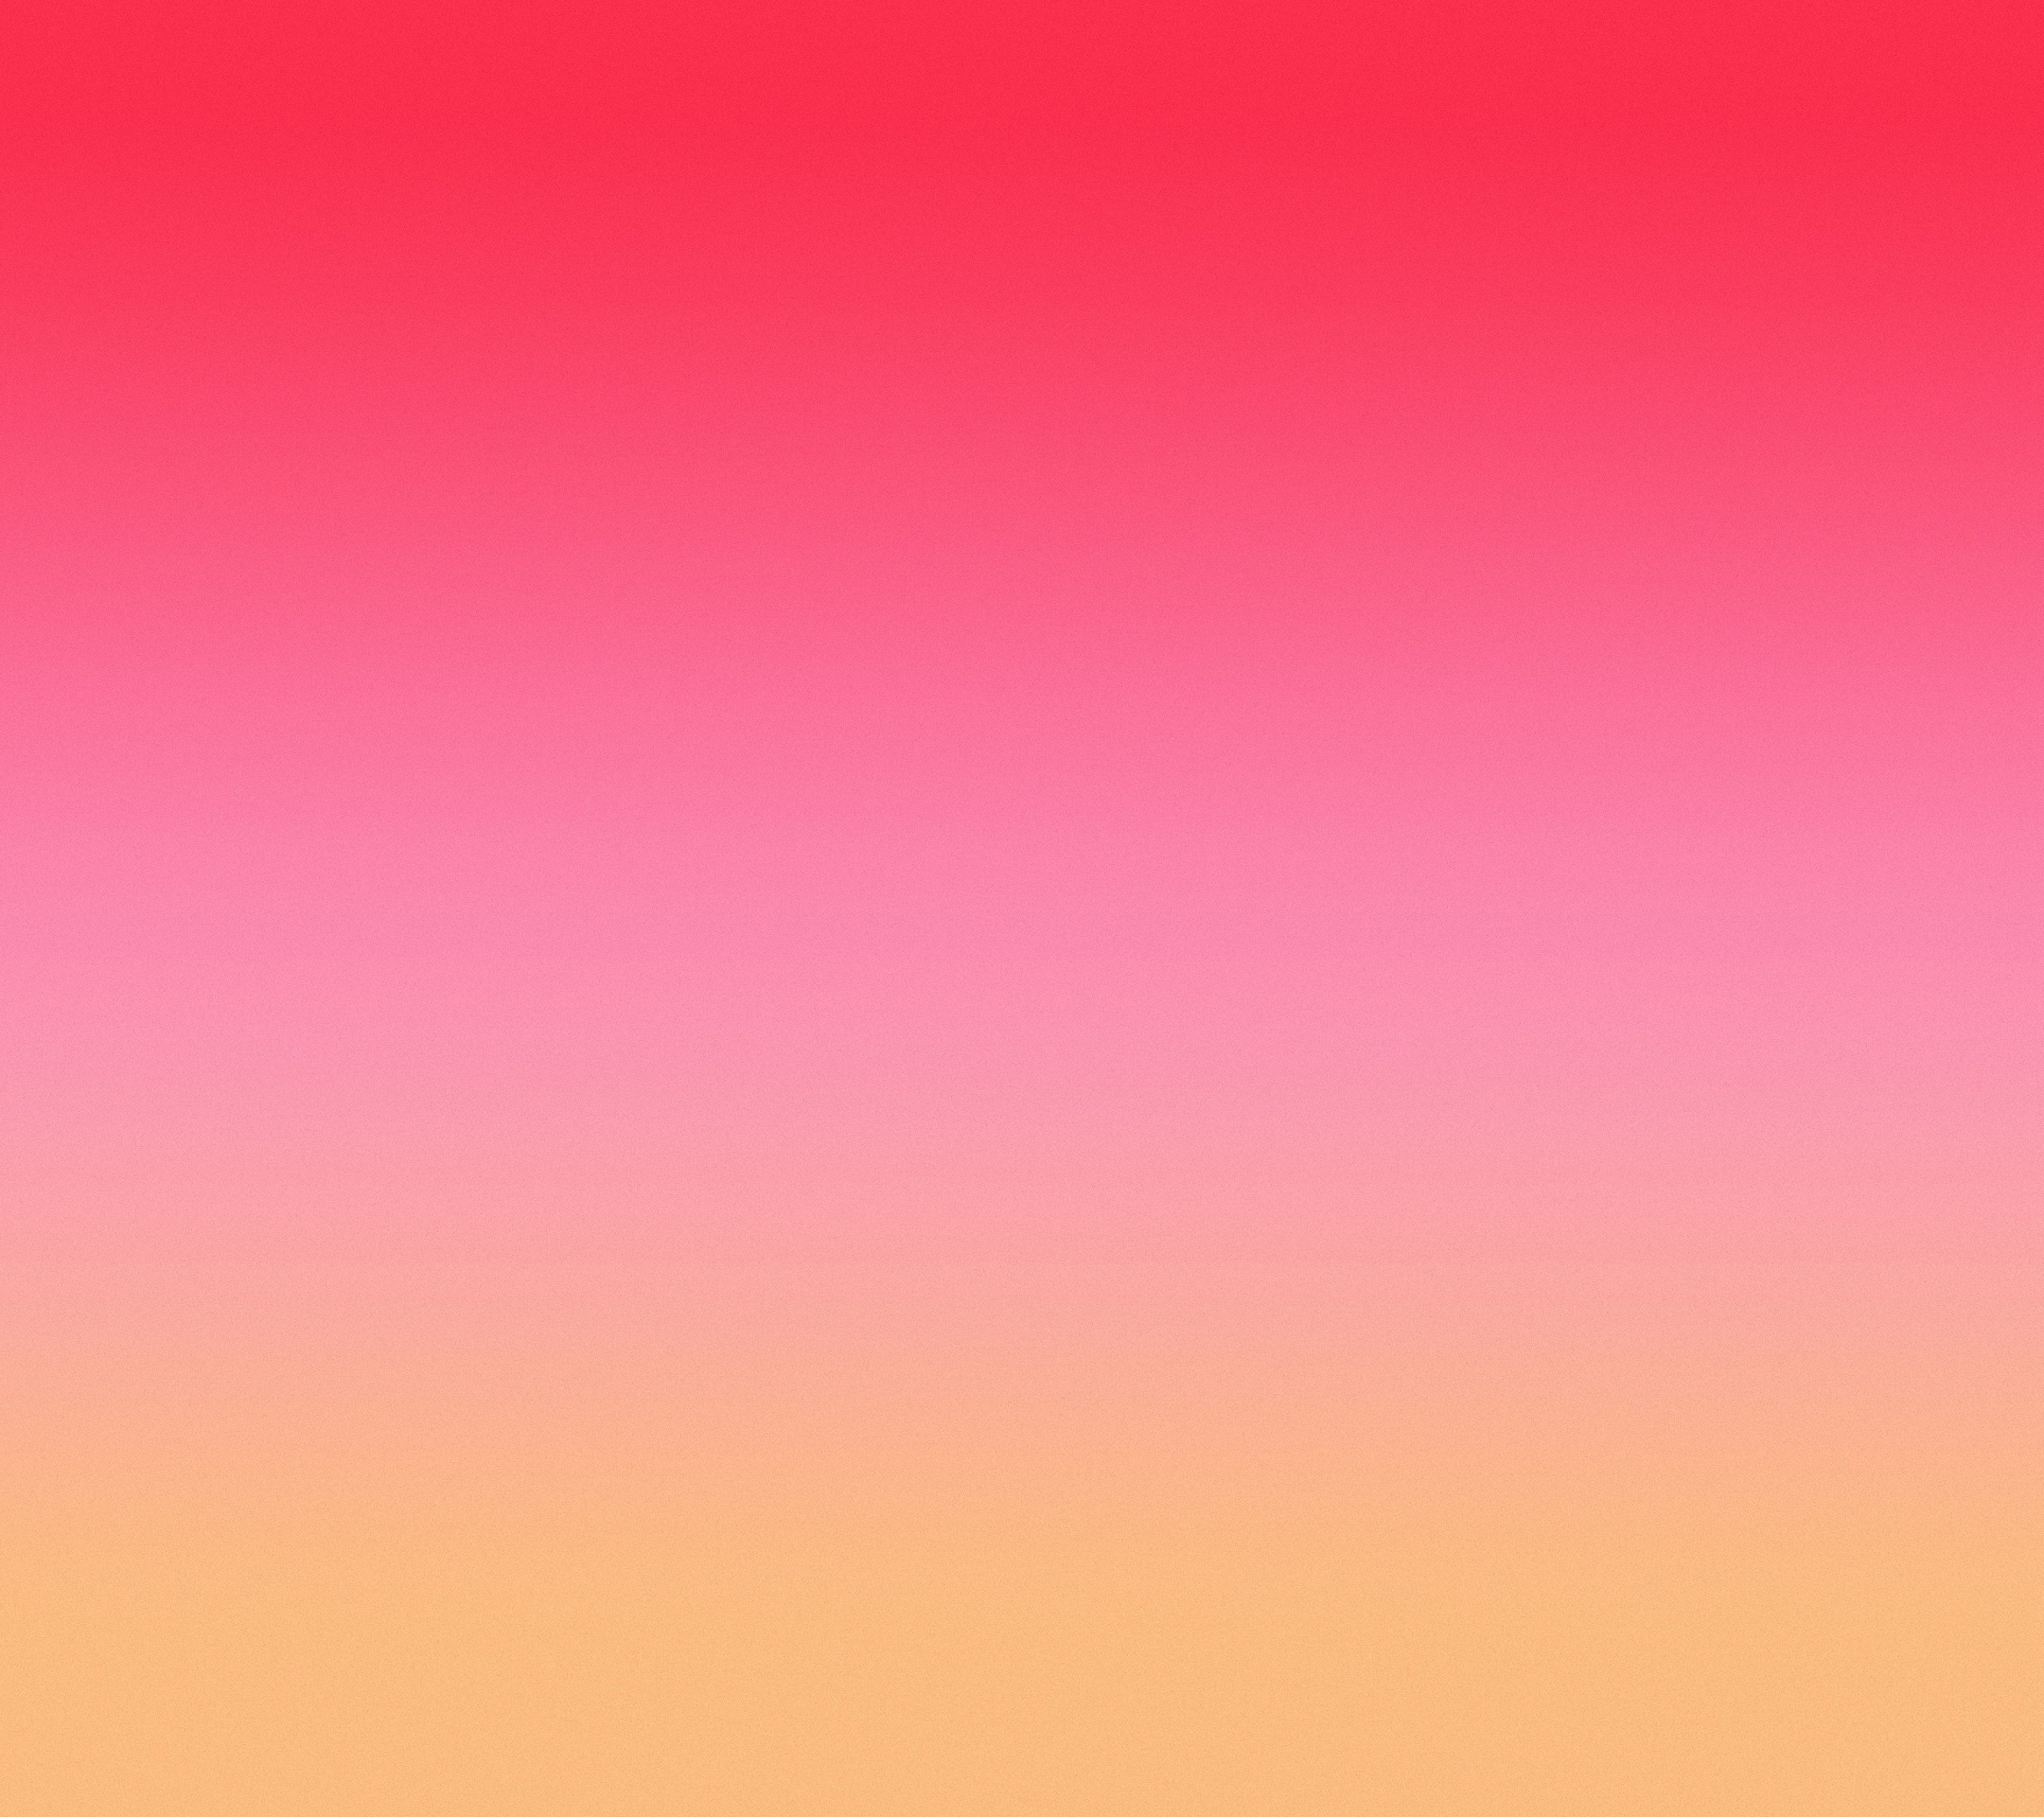 サンゴ色の壁紙,ピンク,赤,空,オレンジ,桃